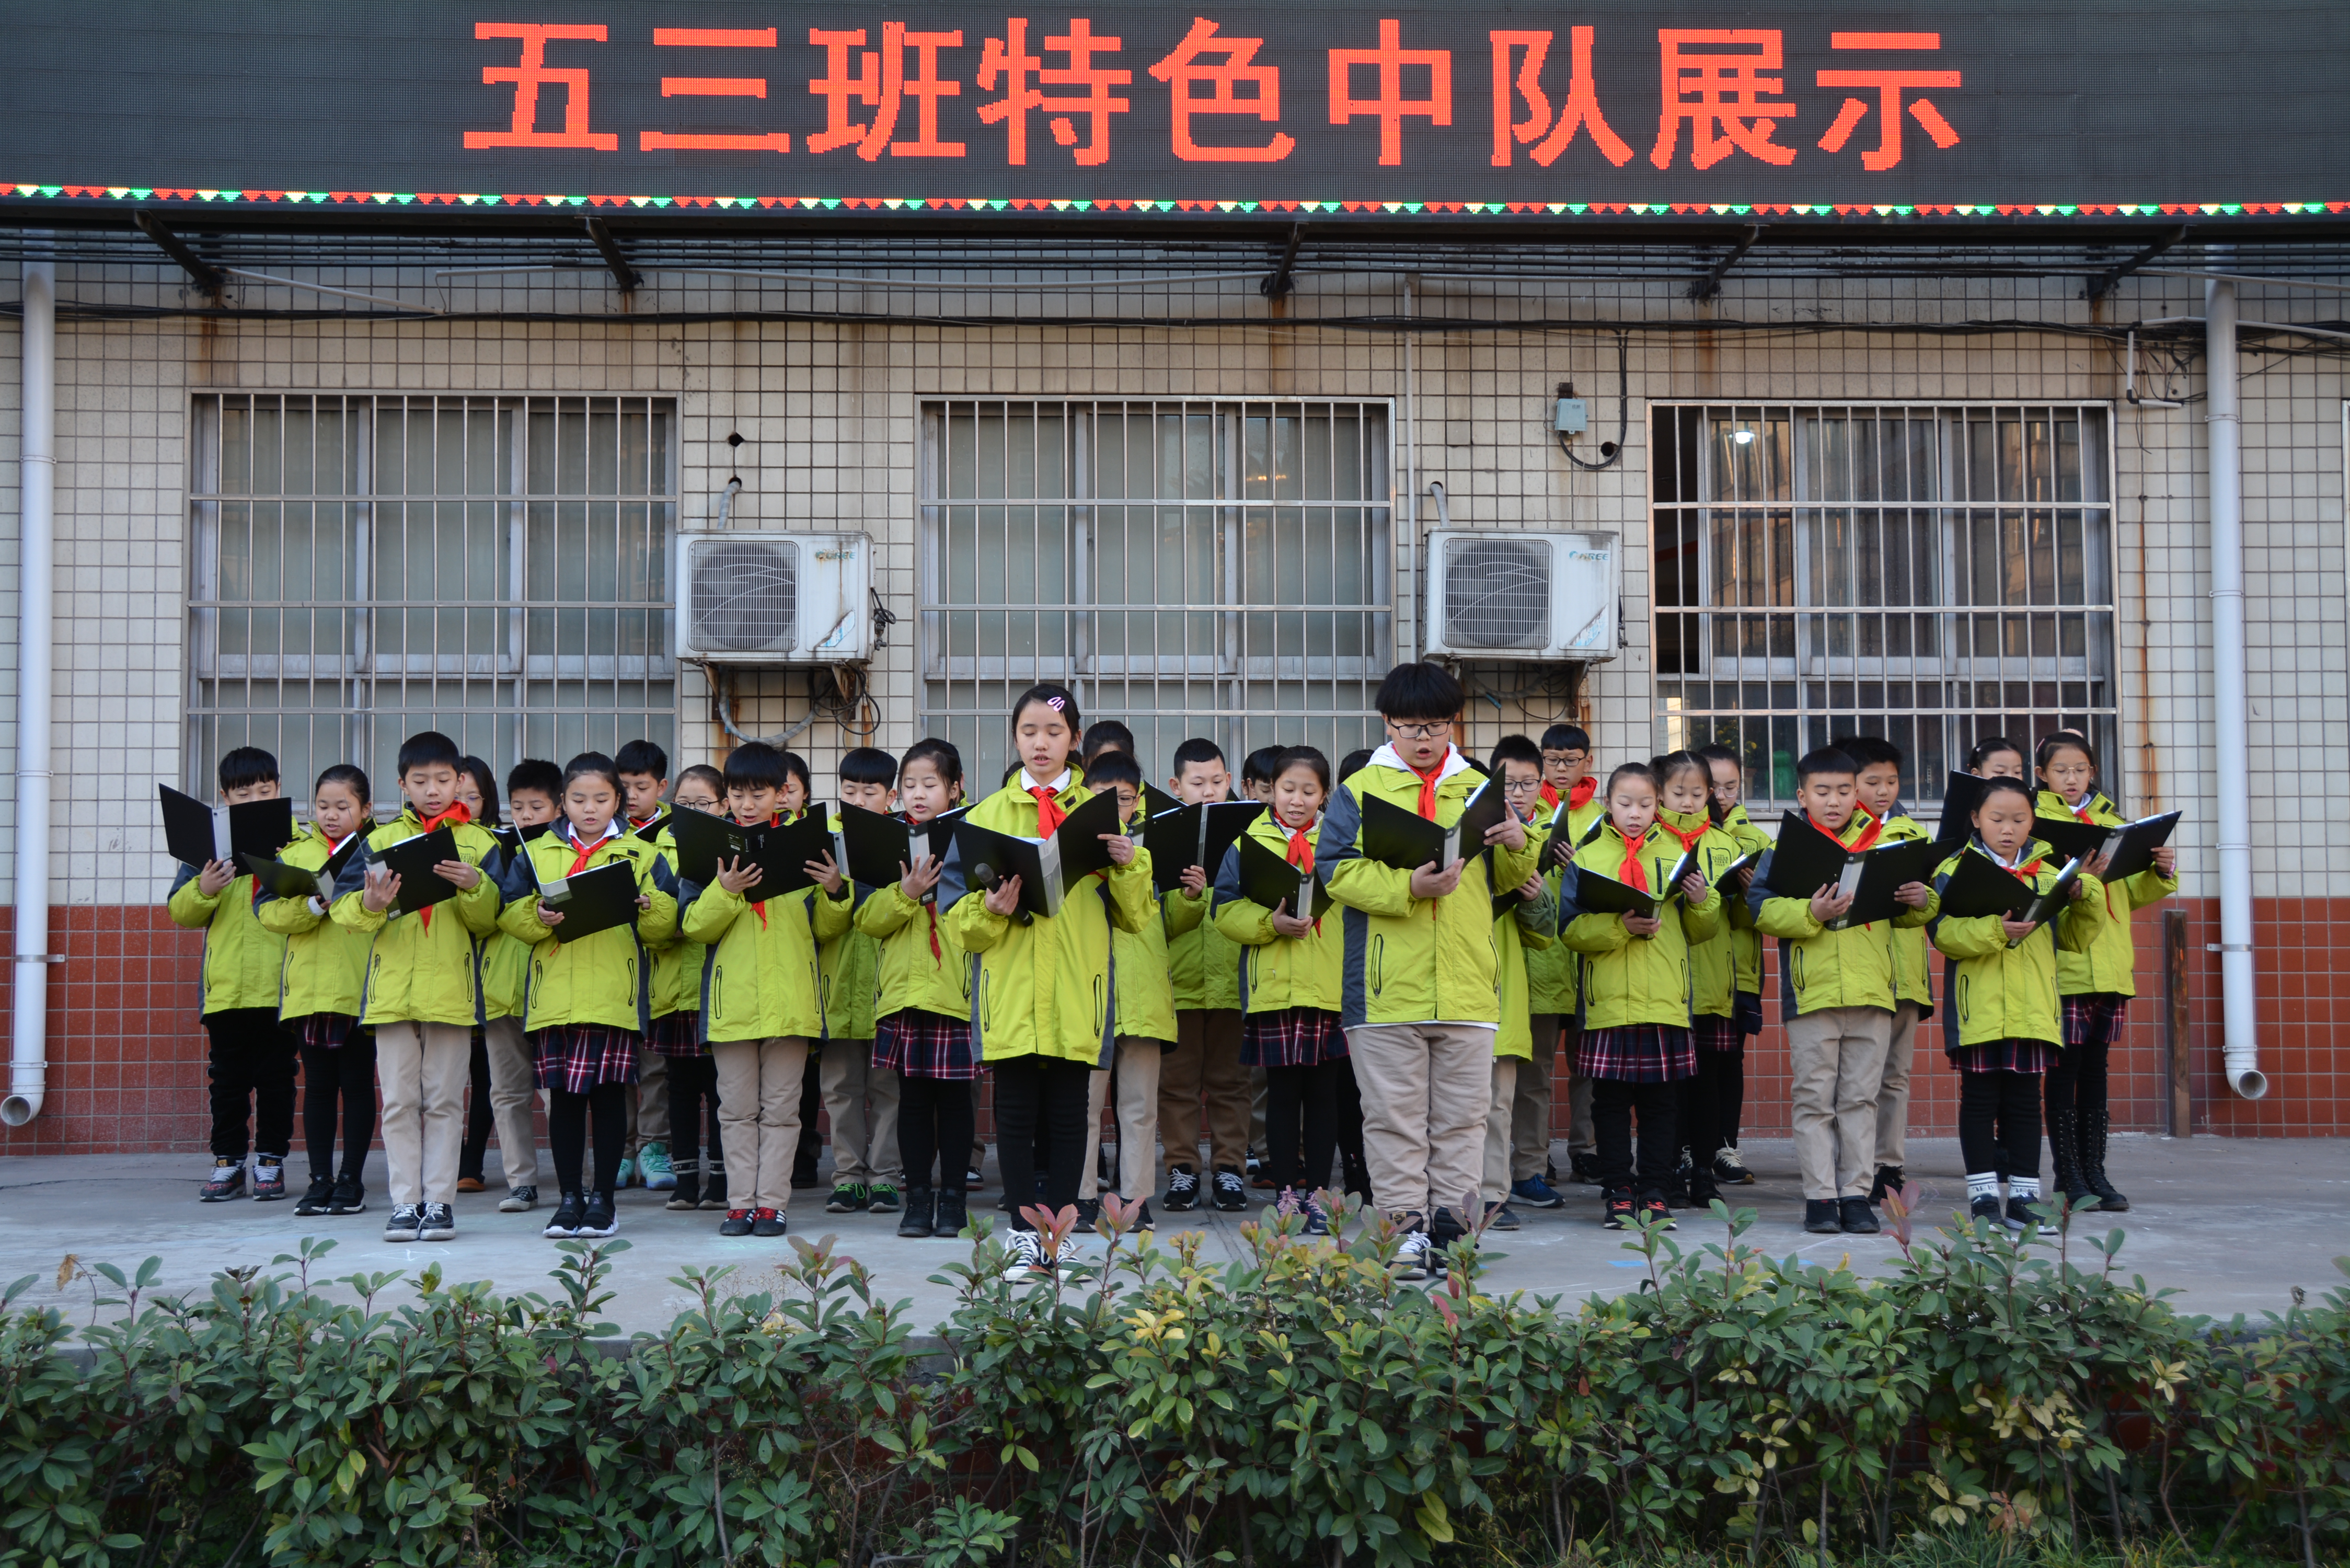 助力郑州创建全国文明城市,12月2日,郑州市管城回族区创新街小学在